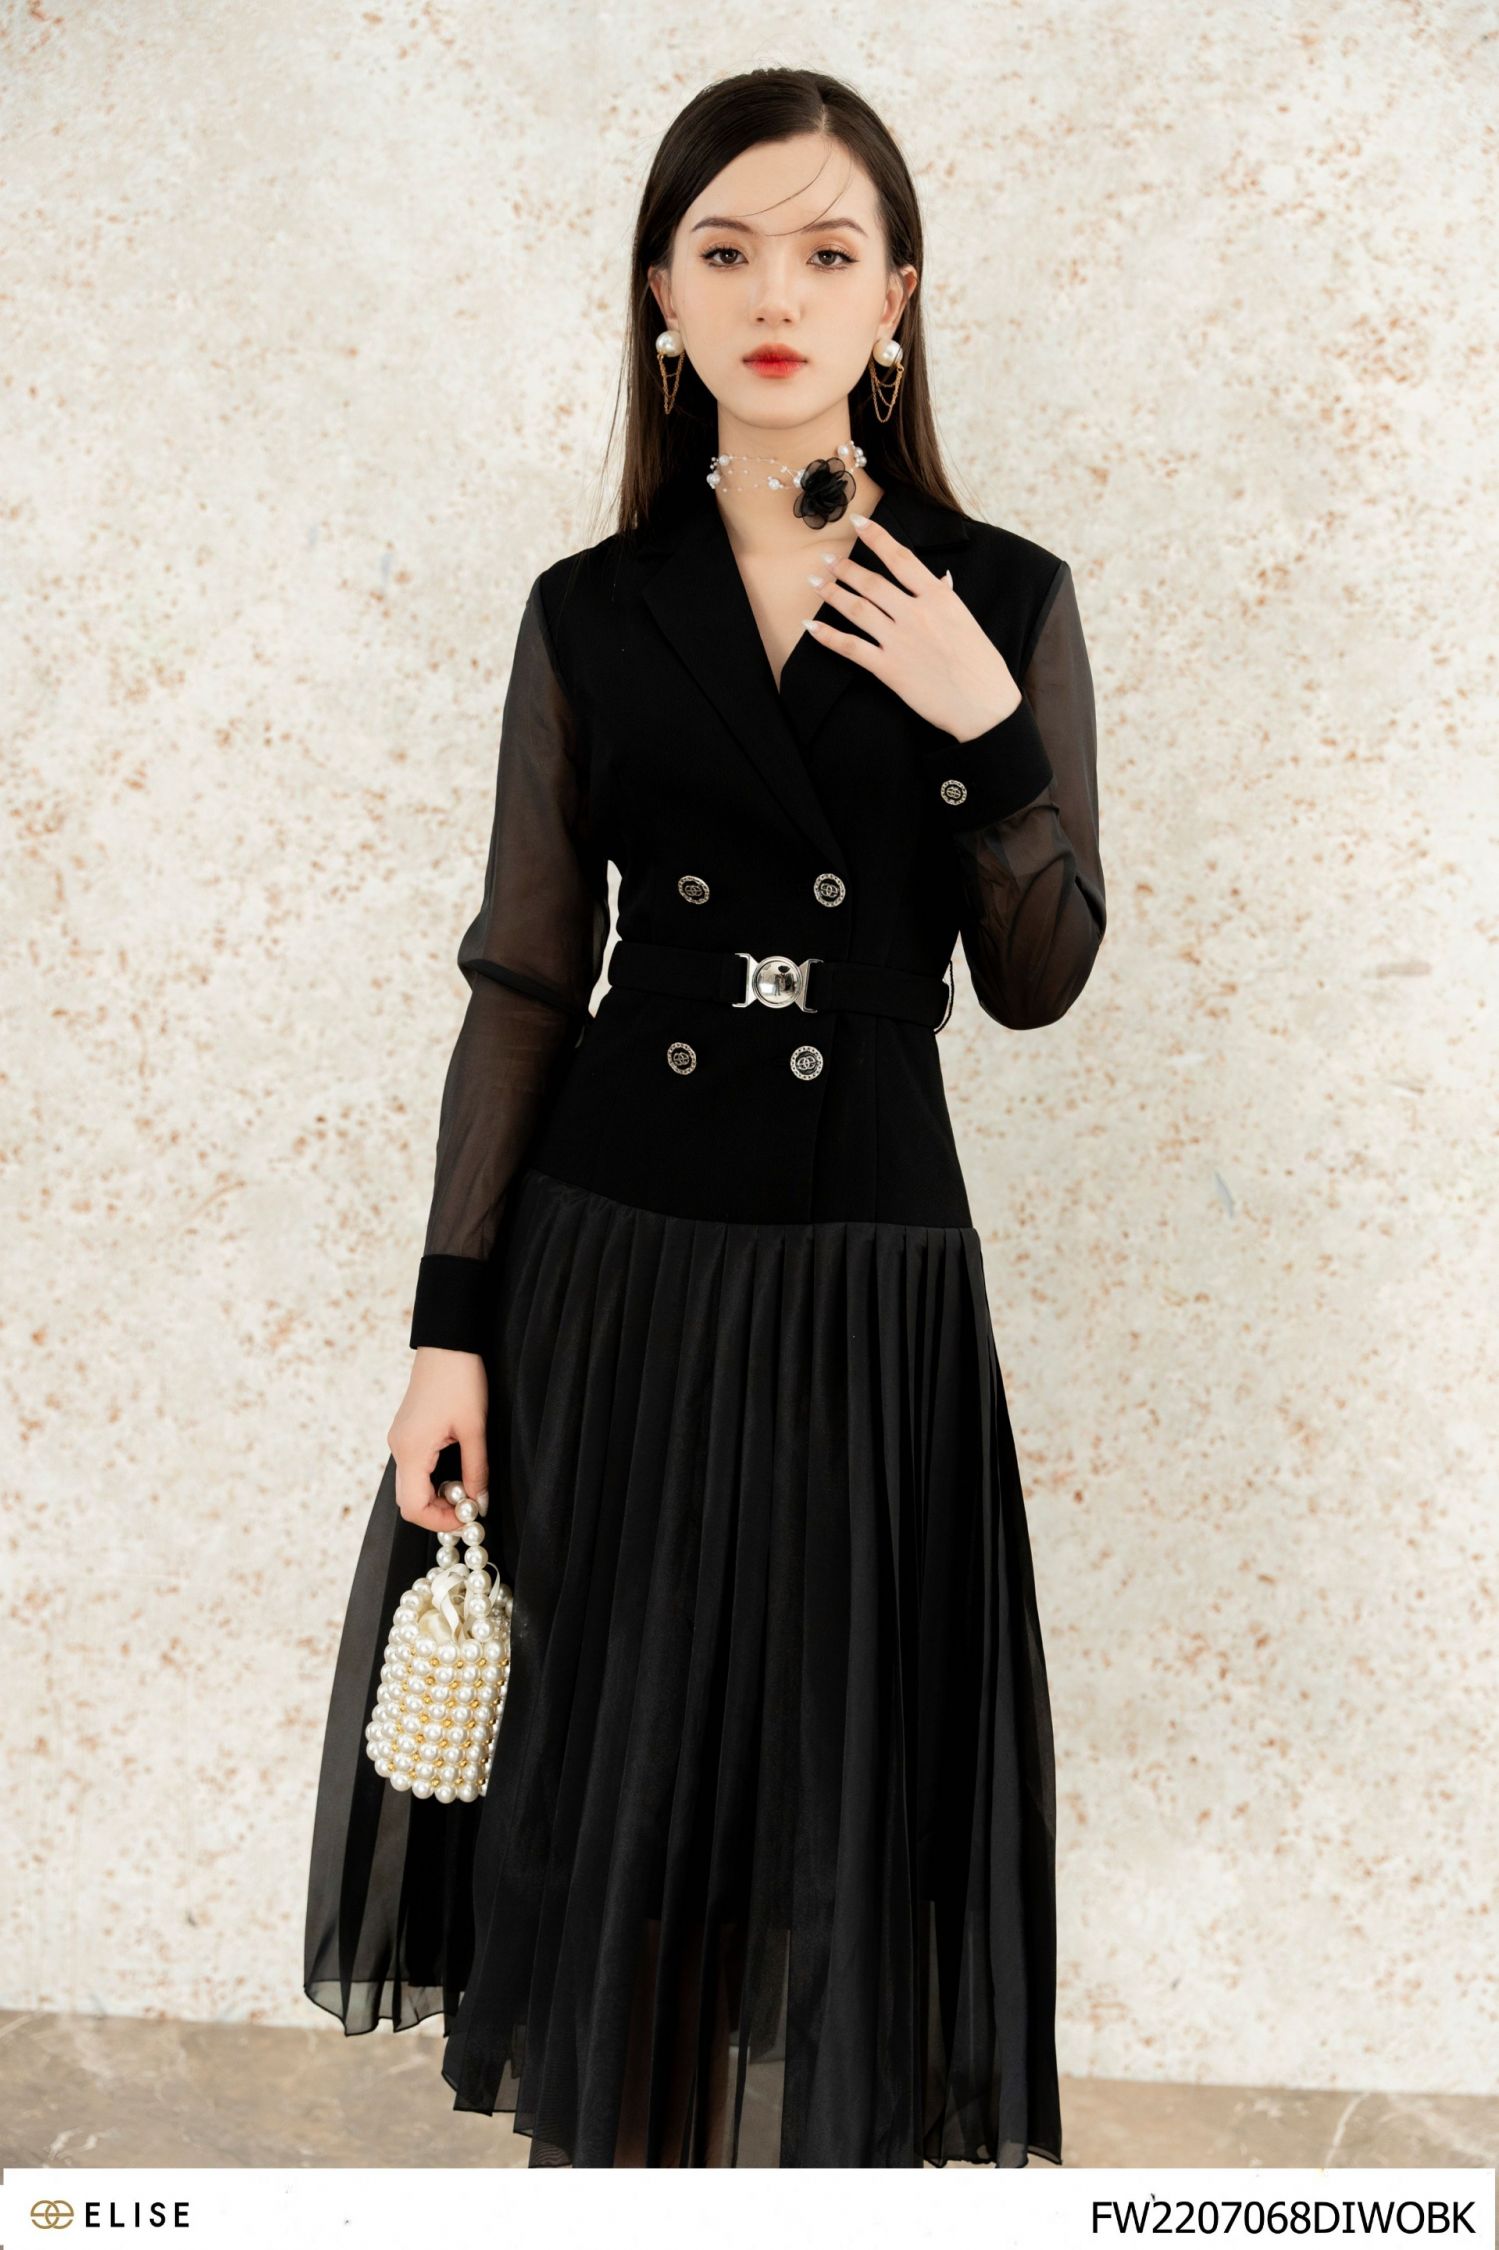 Váy đen vẫn là mẫu váy chiều lòng phái đẹp trong nhu cầu chưng diện